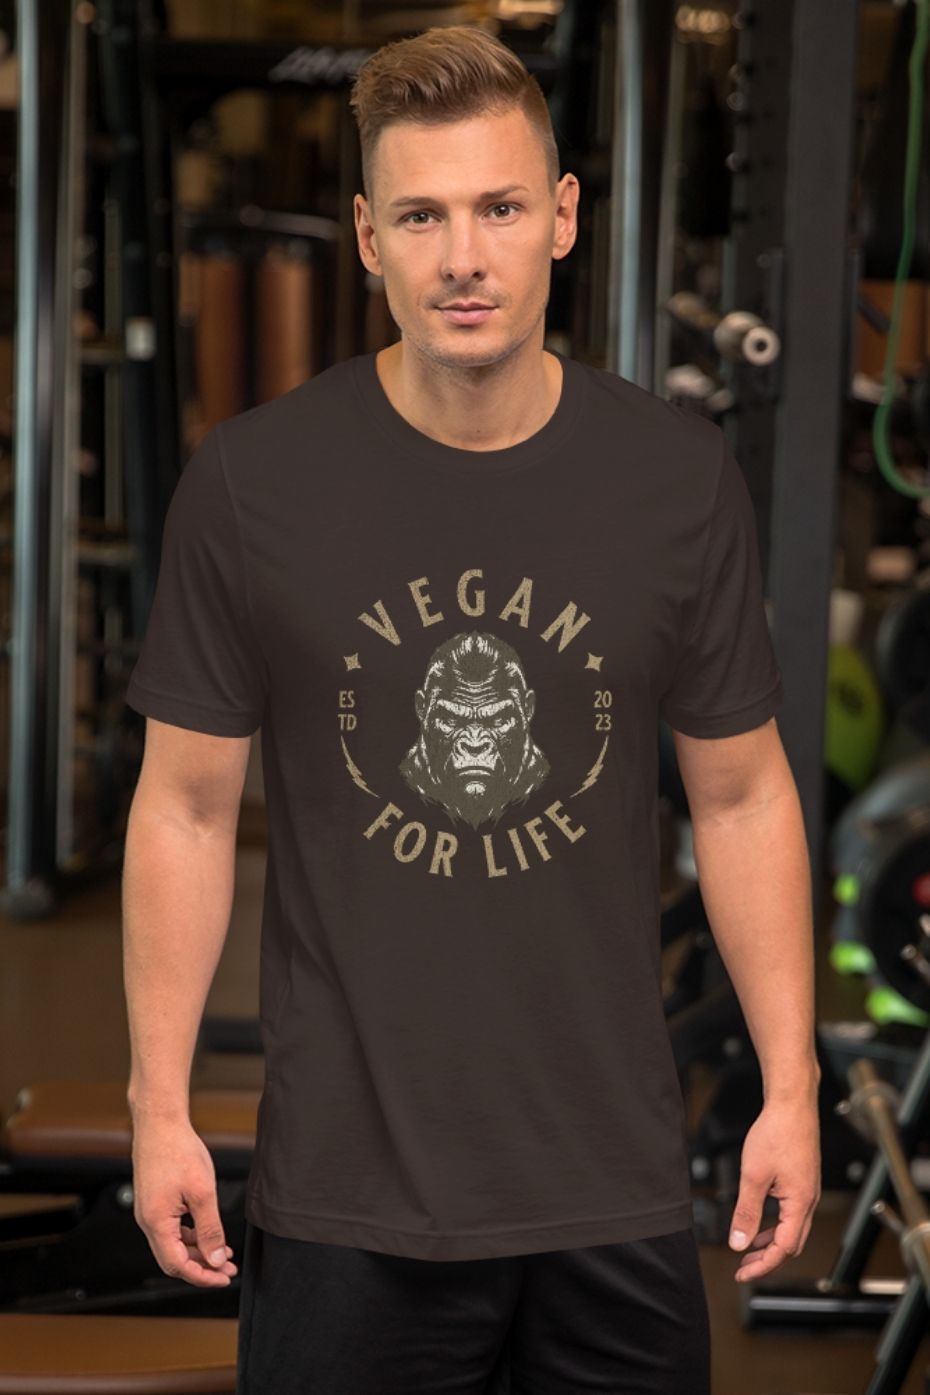 Vegan For Life - Unisex vegan t-shirt